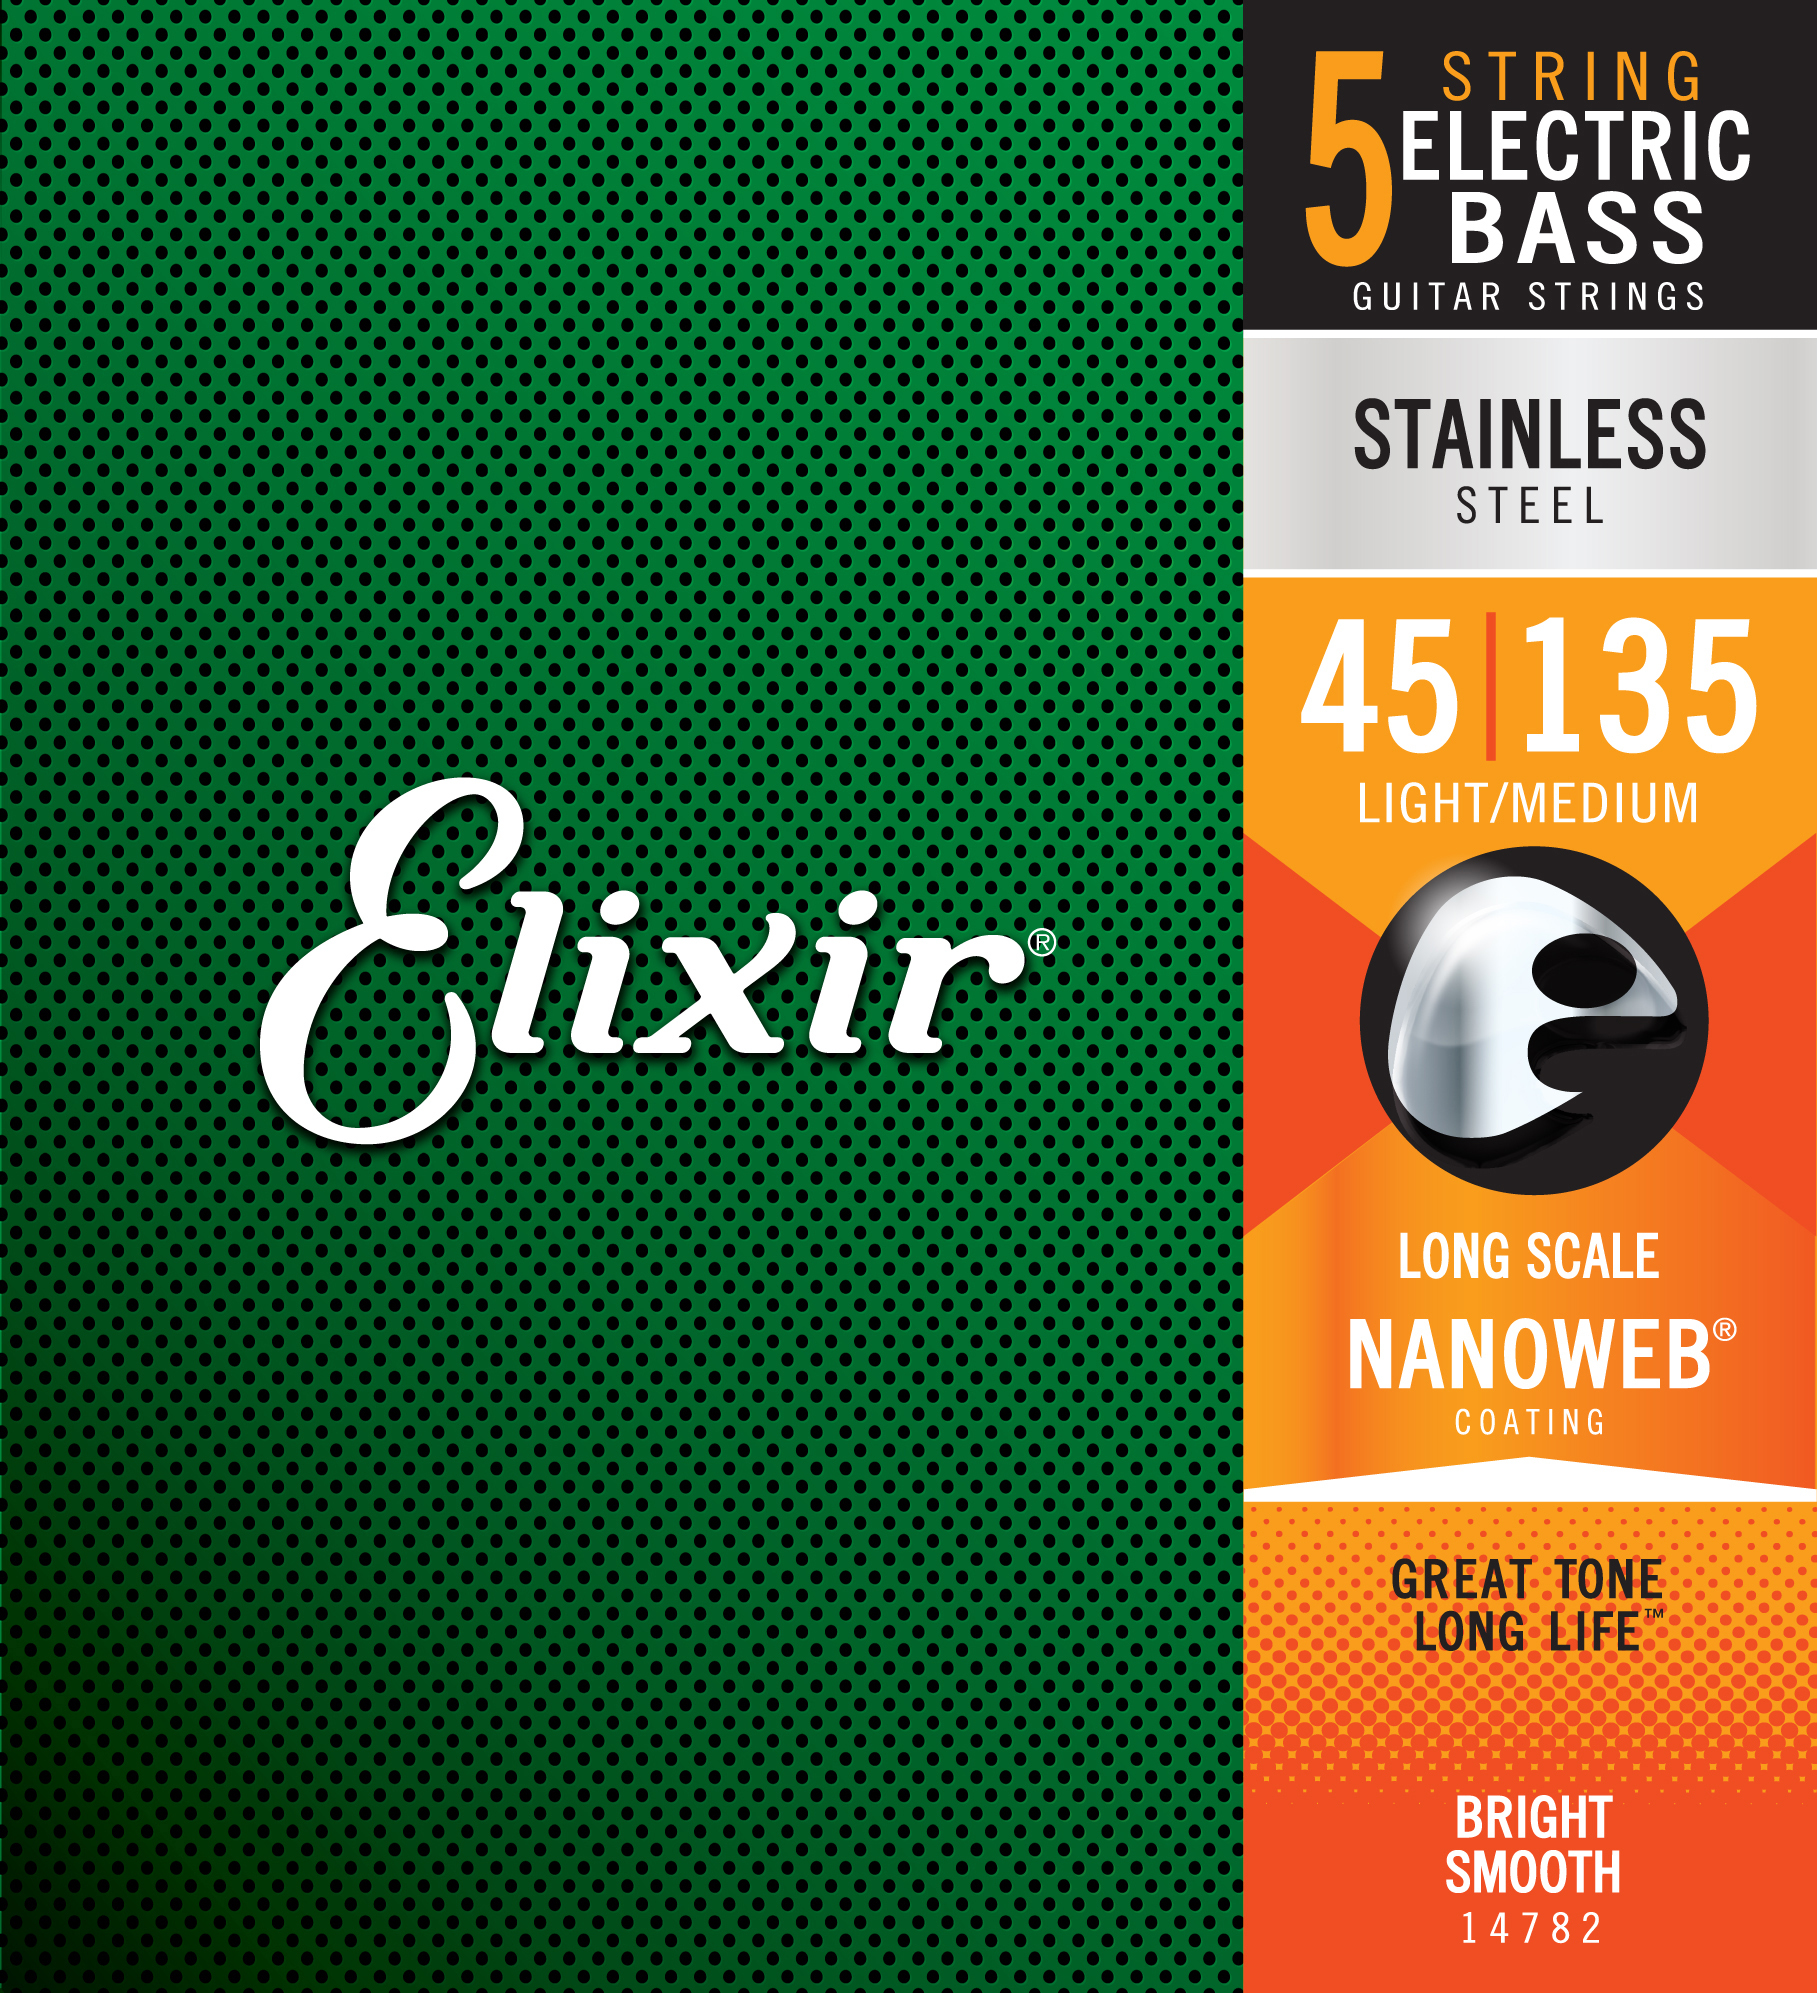 Elixir 14782 5-string Nanoweb Stainless Steel Long Scale Electric Bass 5c Light Medium 45-135 - Cordes Basse Électrique - Main picture